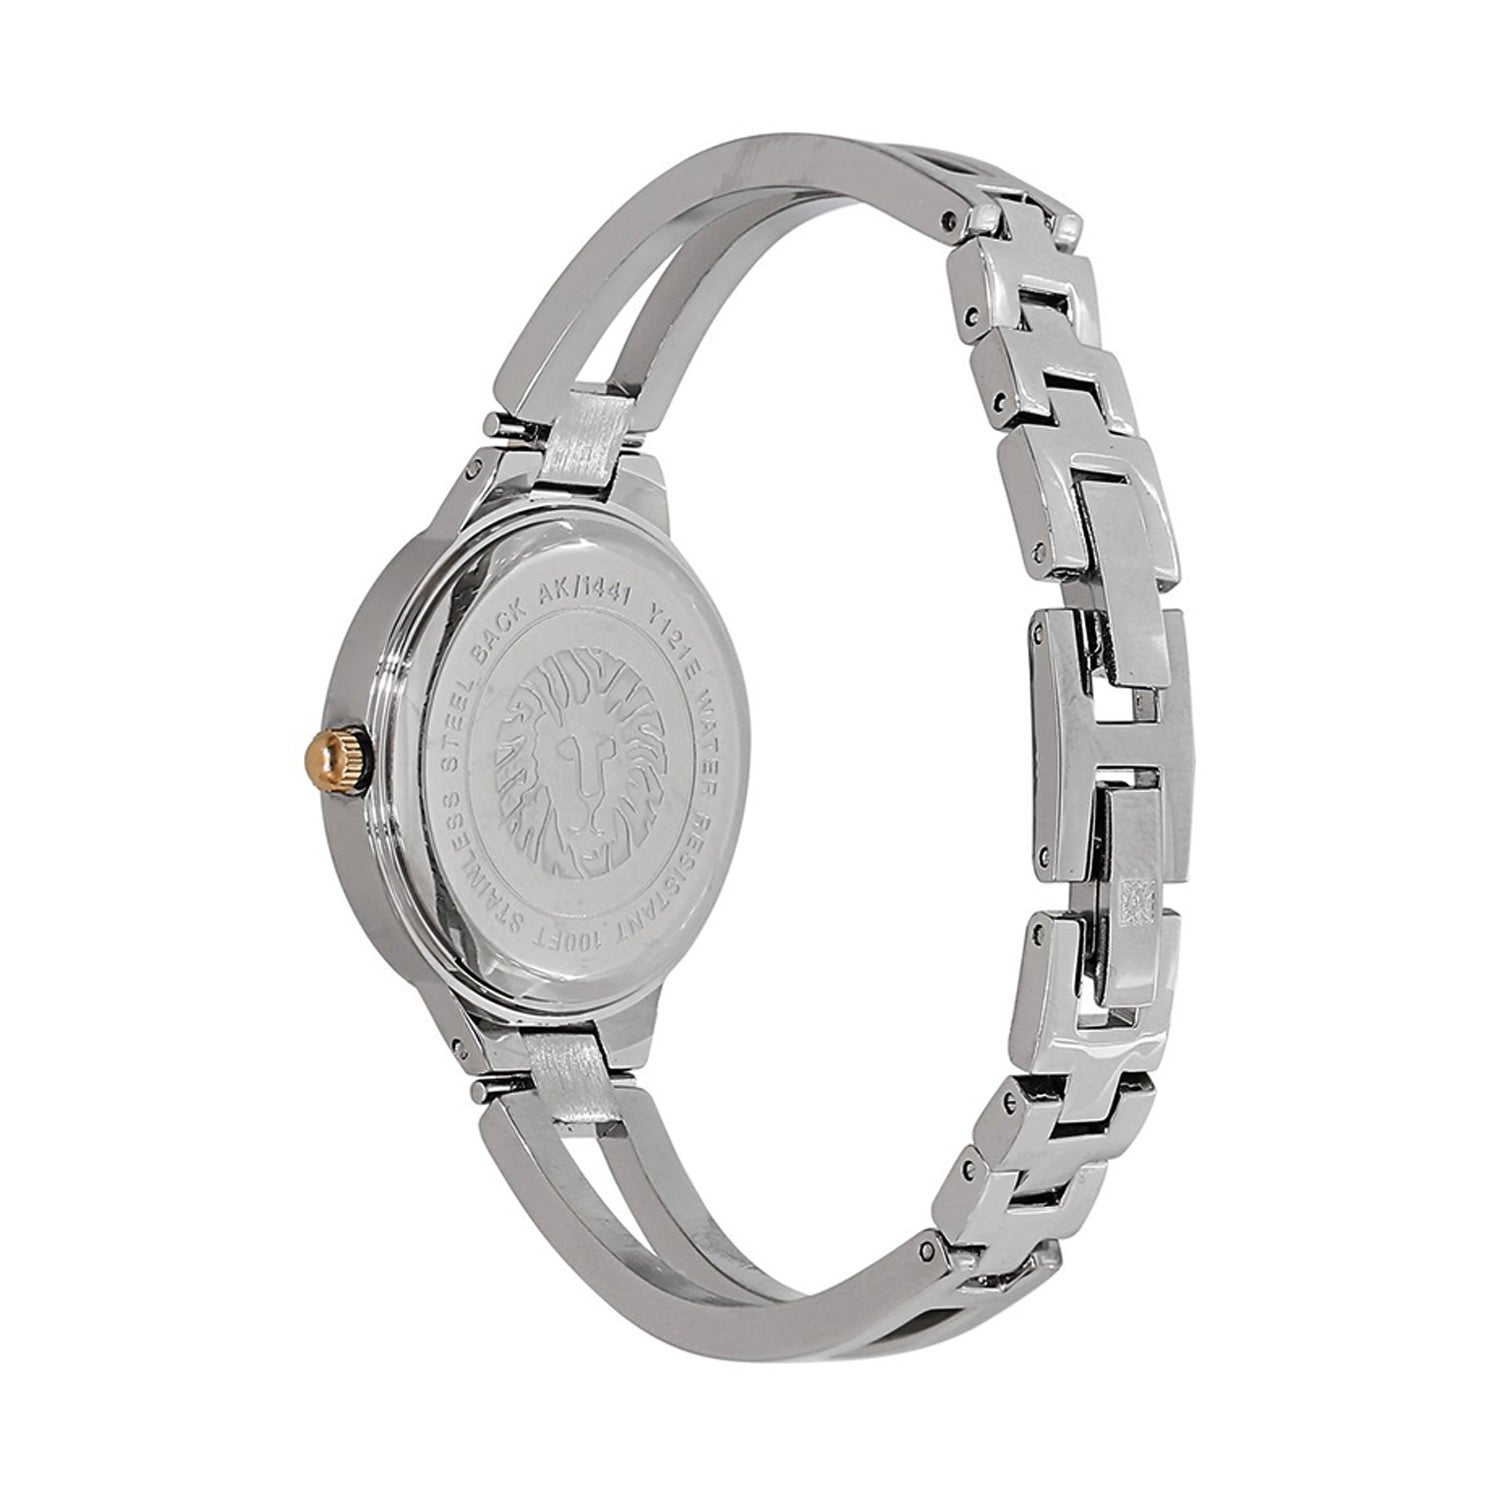 Anne Klein Women's Quartz Watch, Silver Dial - AK-0173